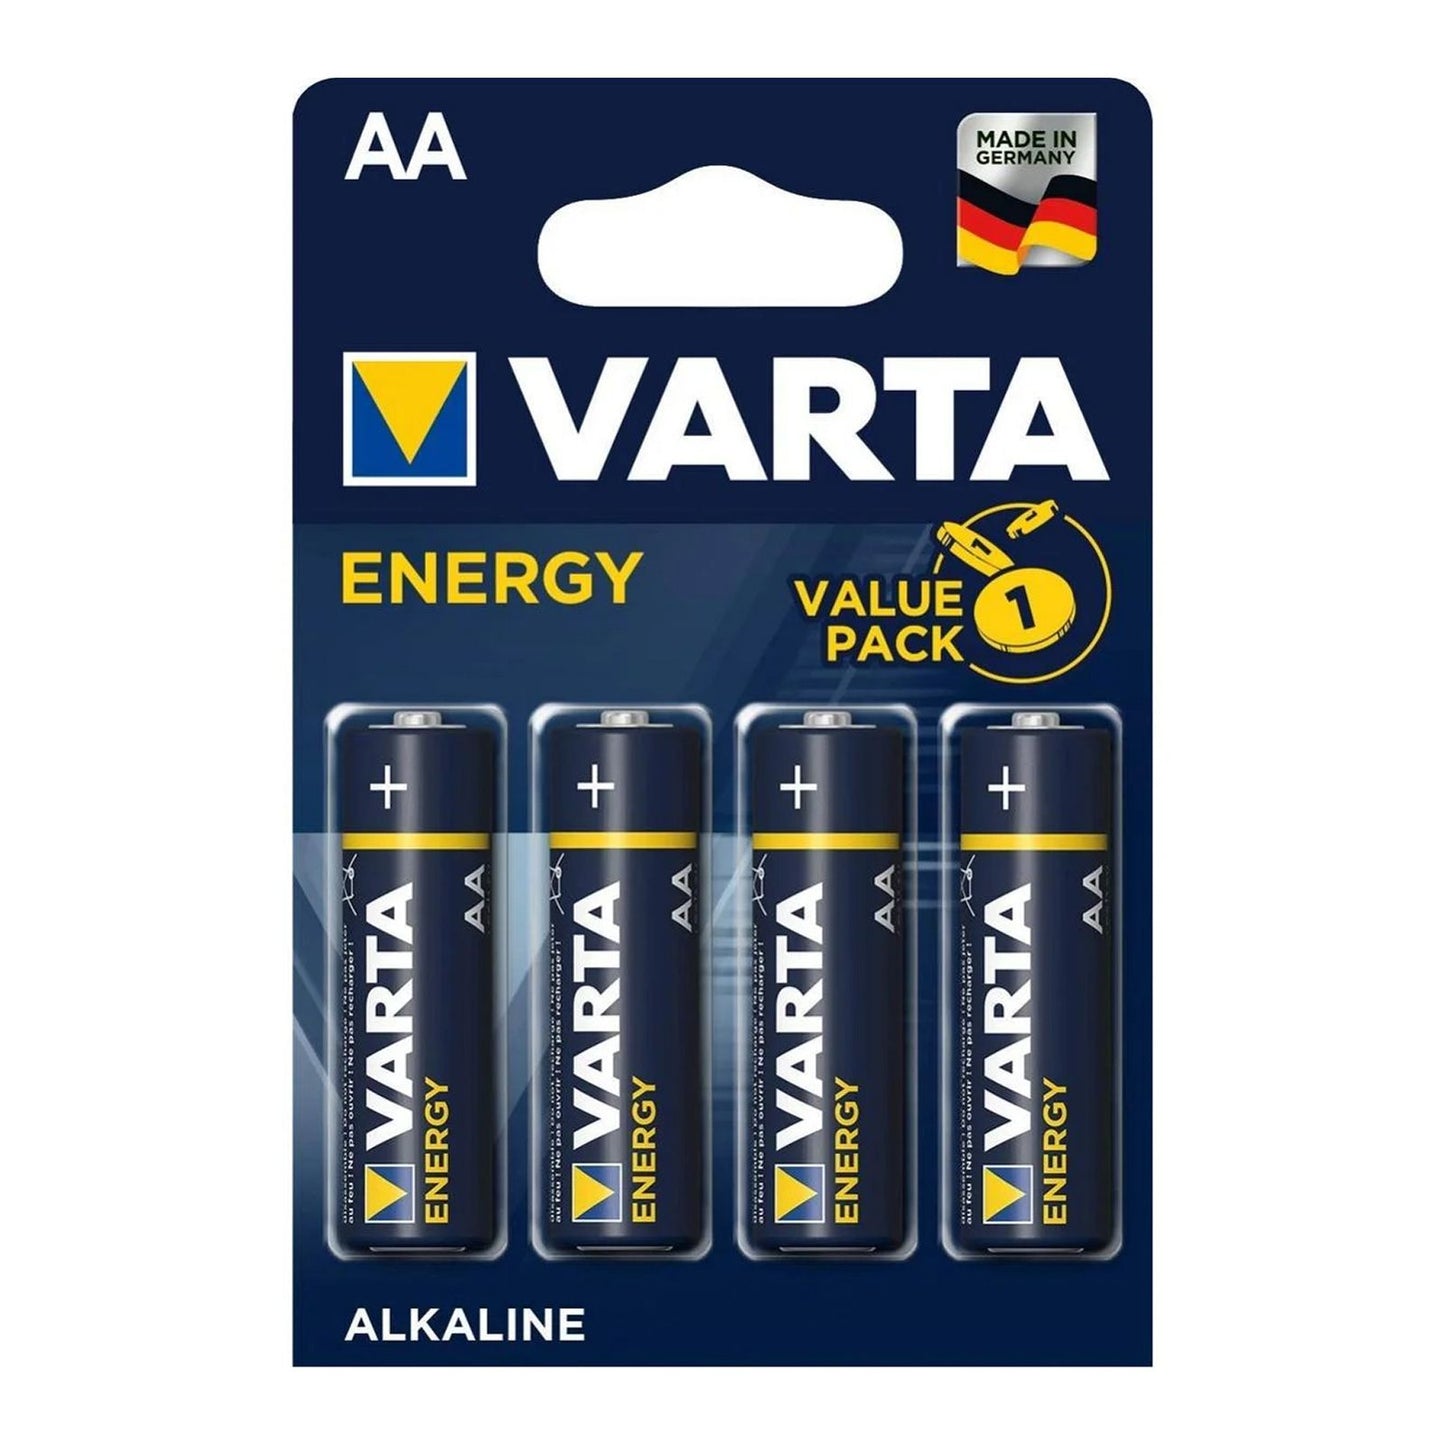 VARTA Energy Stylo AA 1.5V LR6, pack of 4, blister pack of 4 alkaline batteries